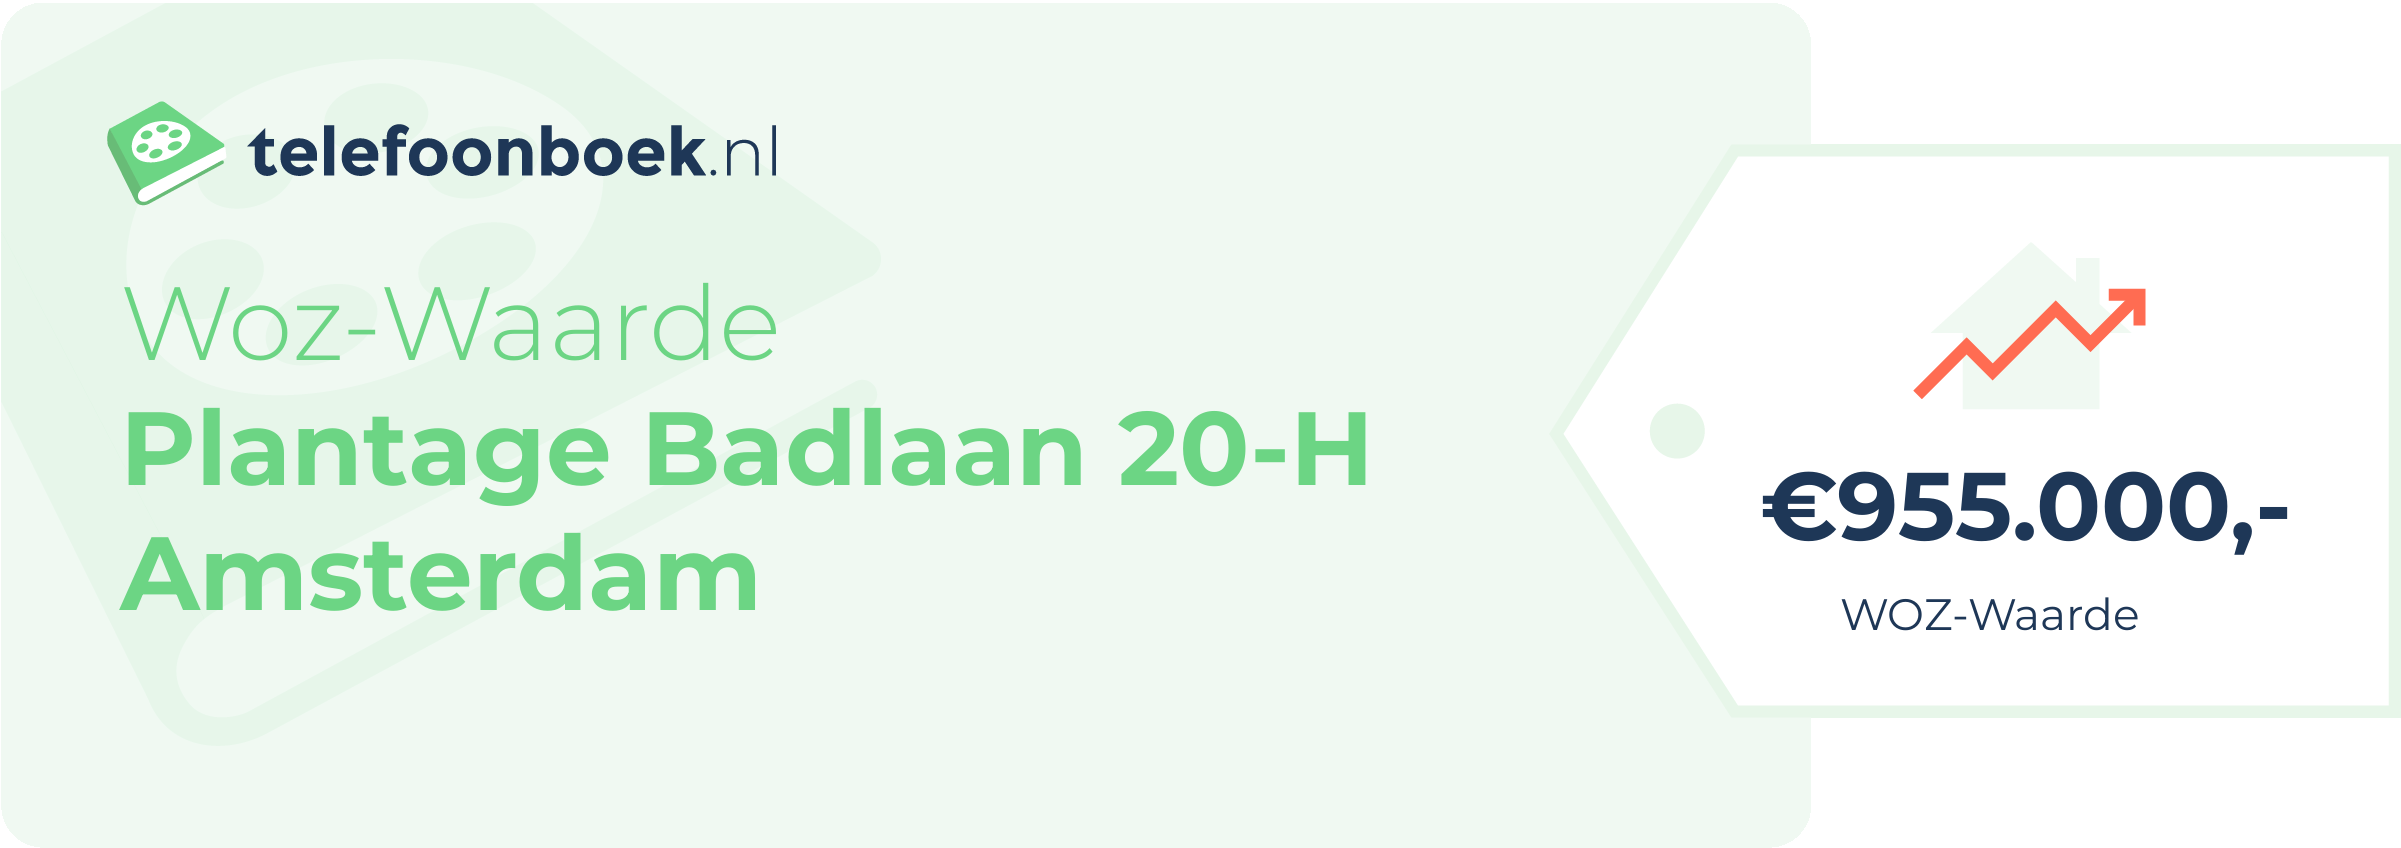 WOZ-waarde Plantage Badlaan 20-H Amsterdam